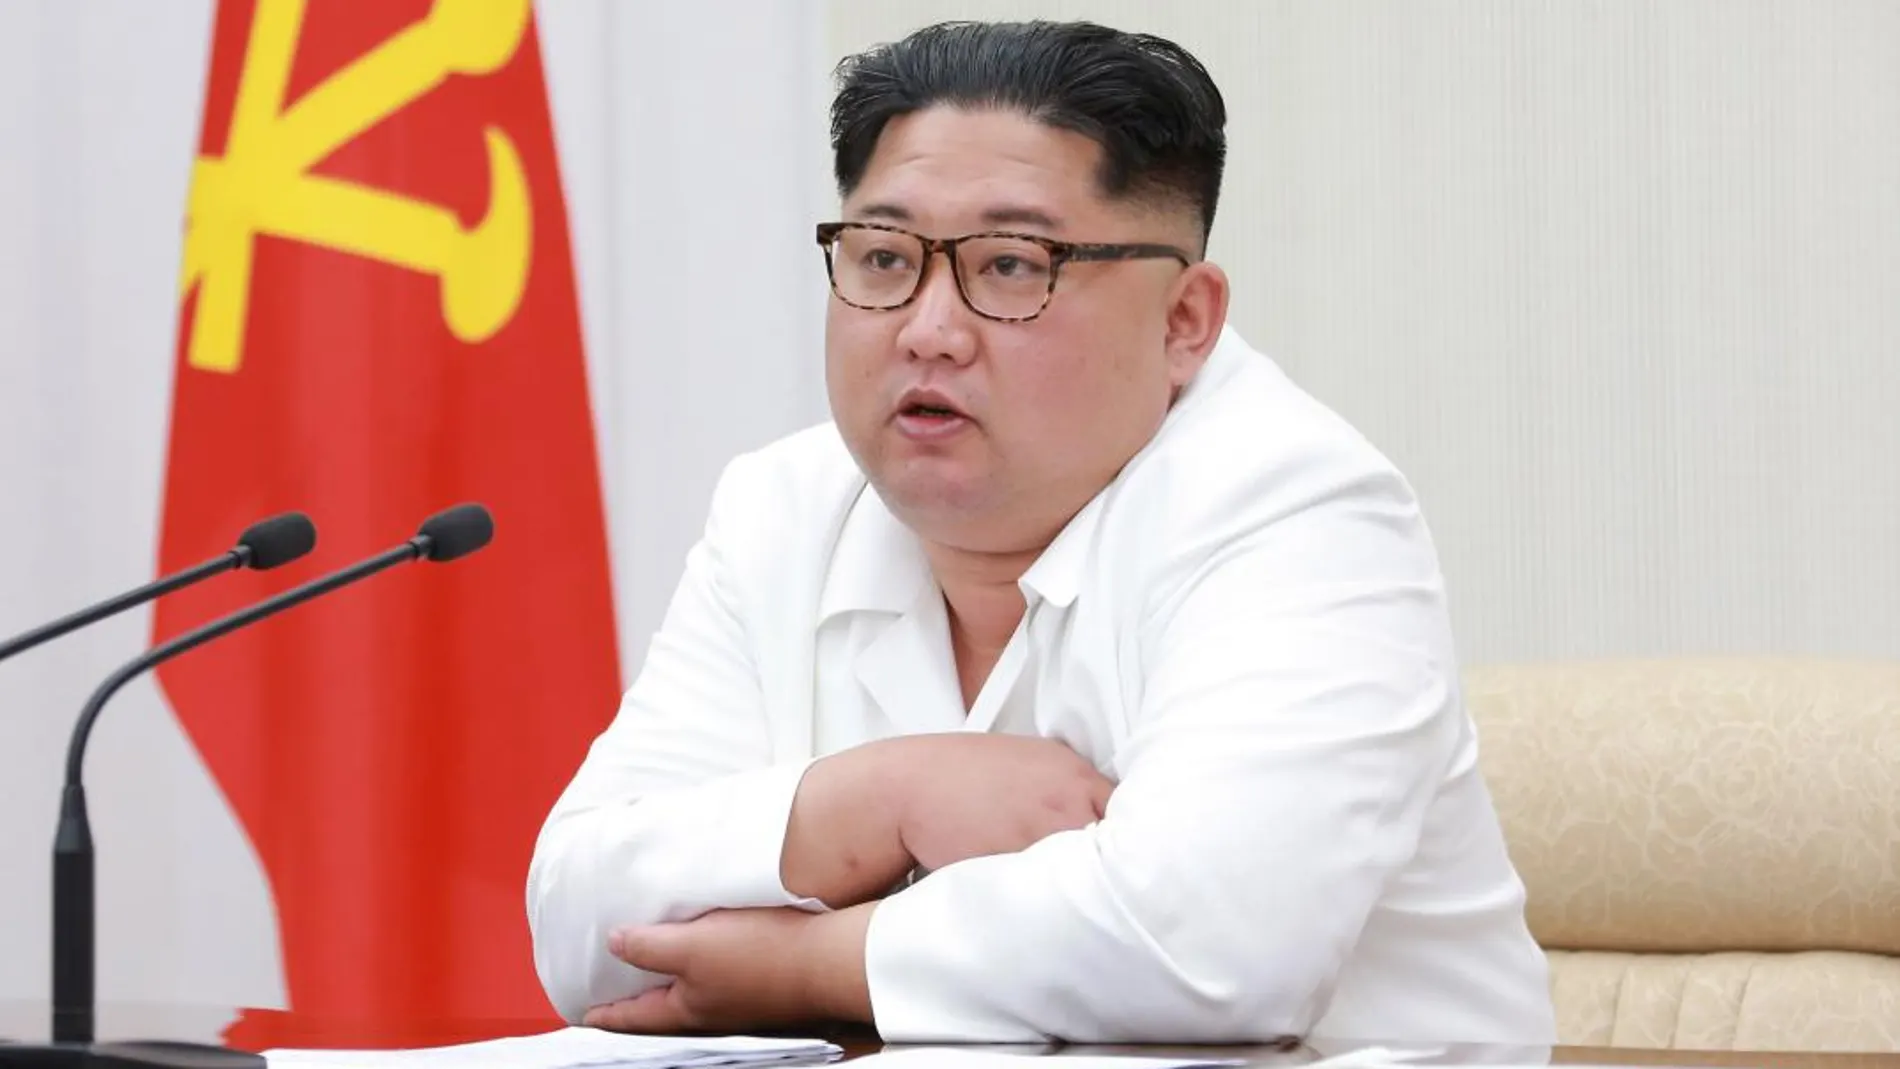 El líder nocoreano, Kim Jong Un / Foto: Reuters